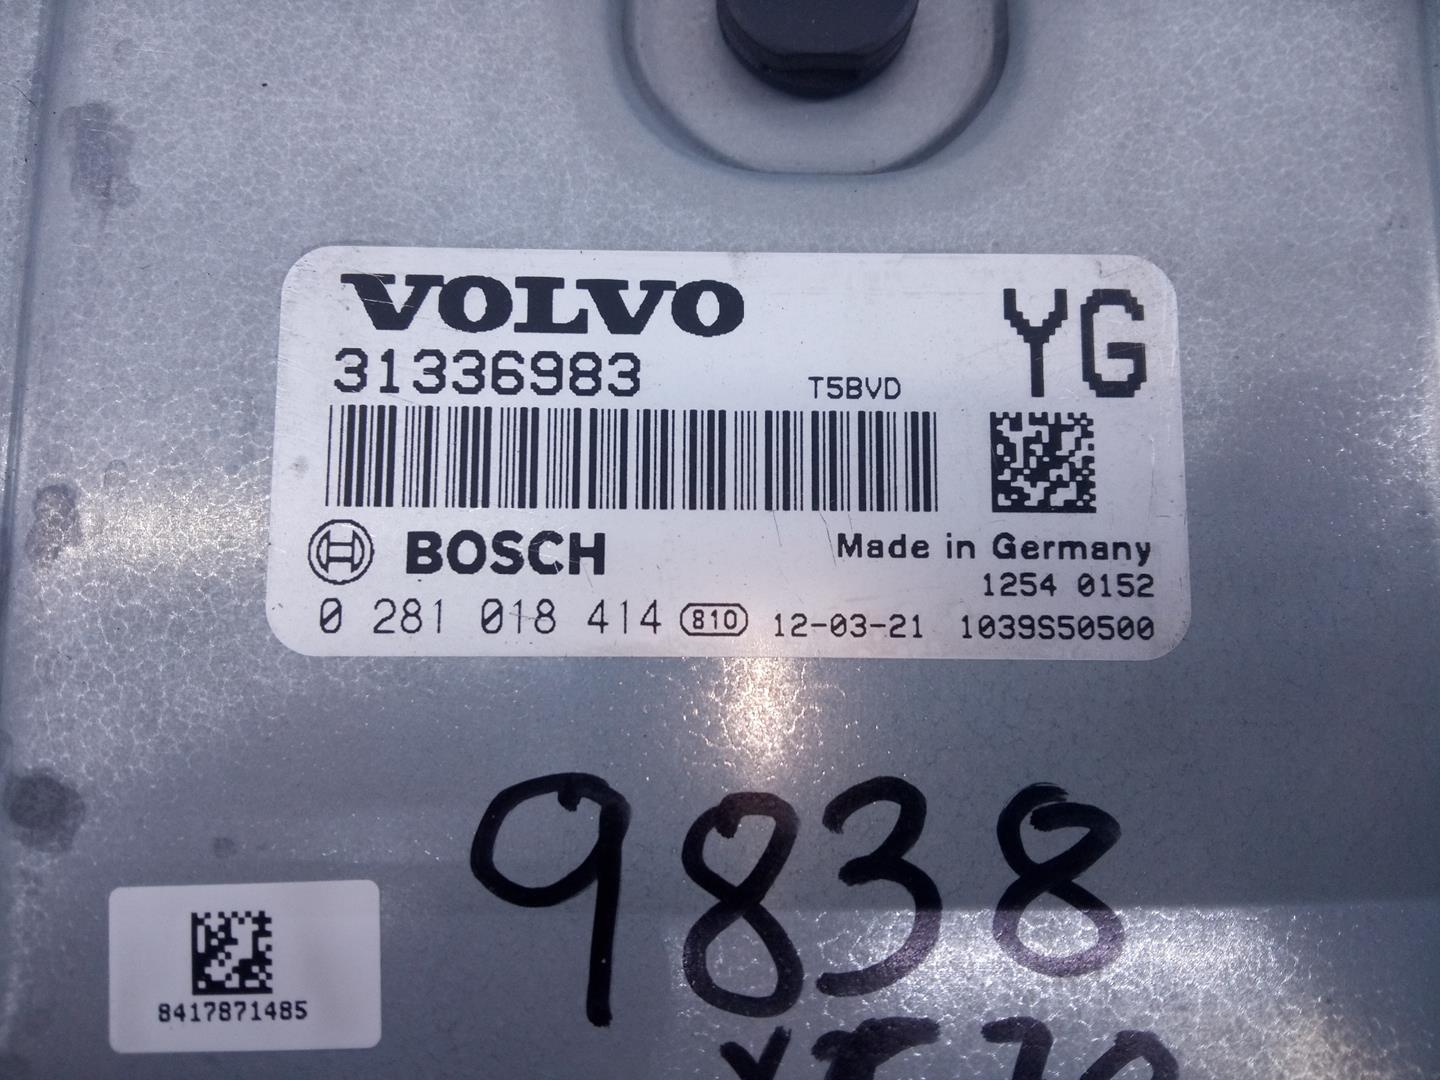 VOLVO XC70 3 generation (2007-2020) Блок управления двигателем 31336983, 0281018414, E3-B5-18-3 24057744